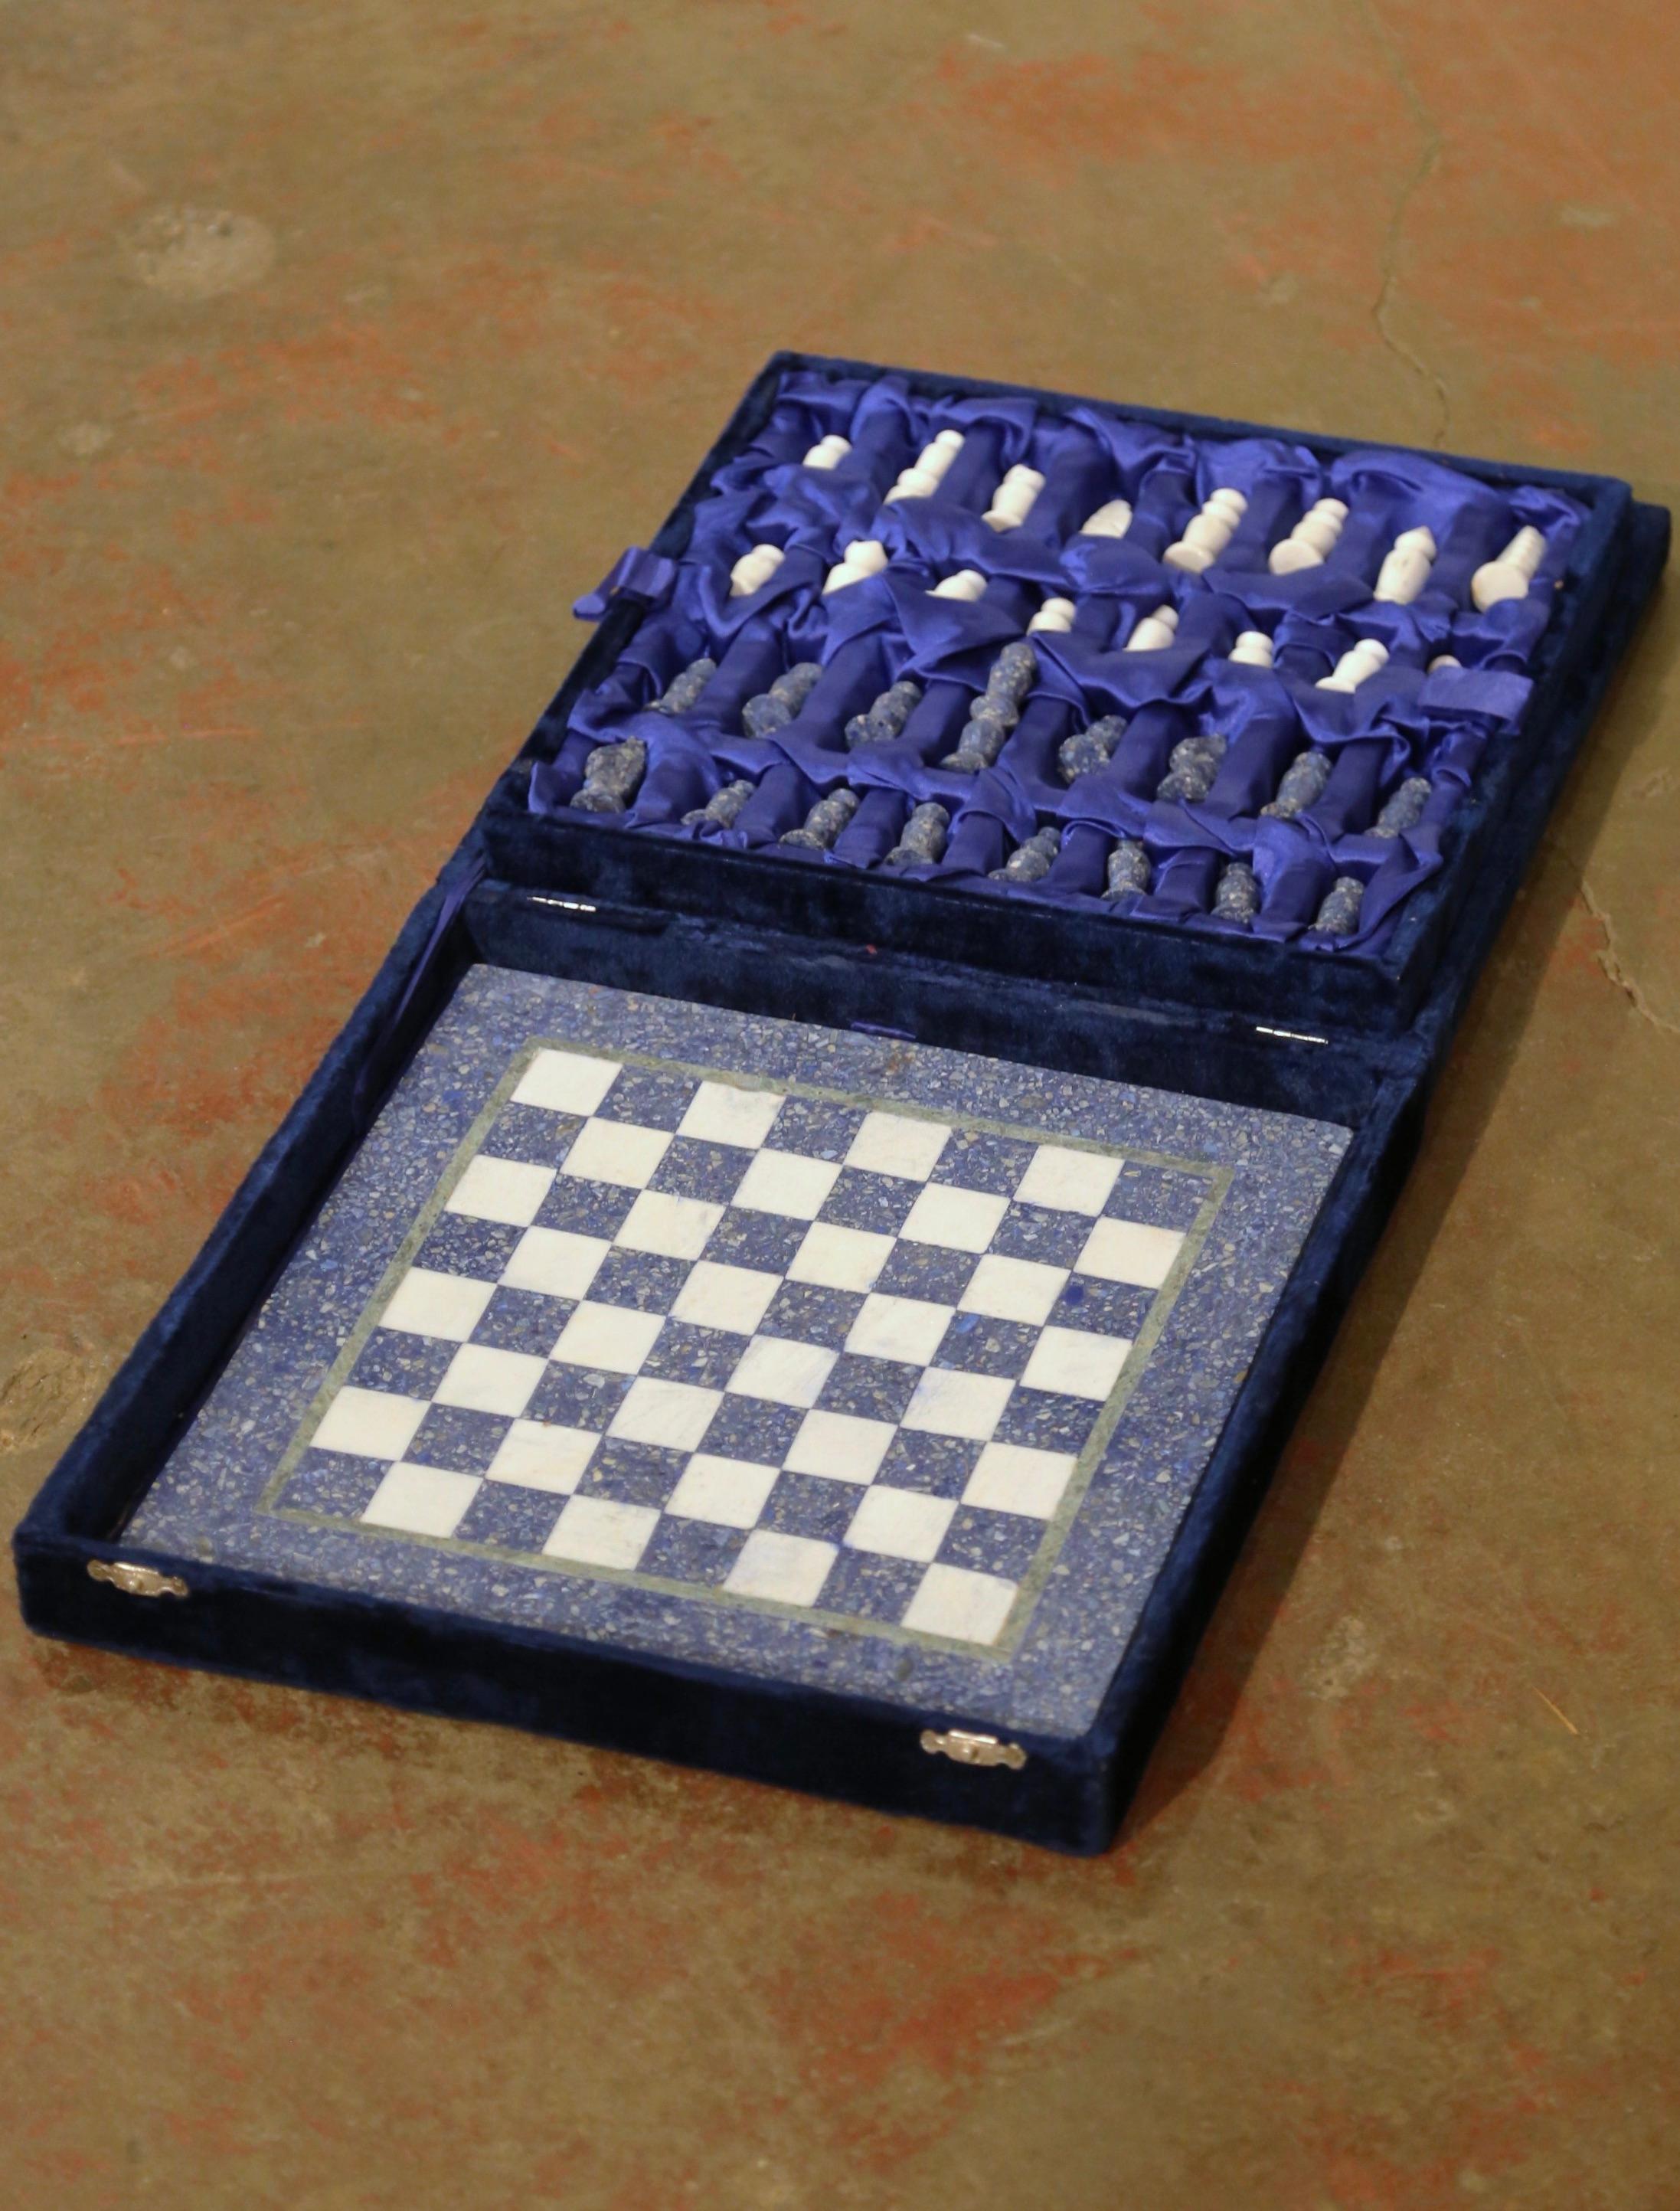 Dieses komplette Set ist kunstvoll handgefertigt und besteht aus einem schweren Schachbrett aus blau-weiß kariertem Schachbrett mit einem olivgrünen Rand und zweiunddreißig Steinfiguren. Die Hälfte dieser Stücke ist ein wunderschönes, prächtiges